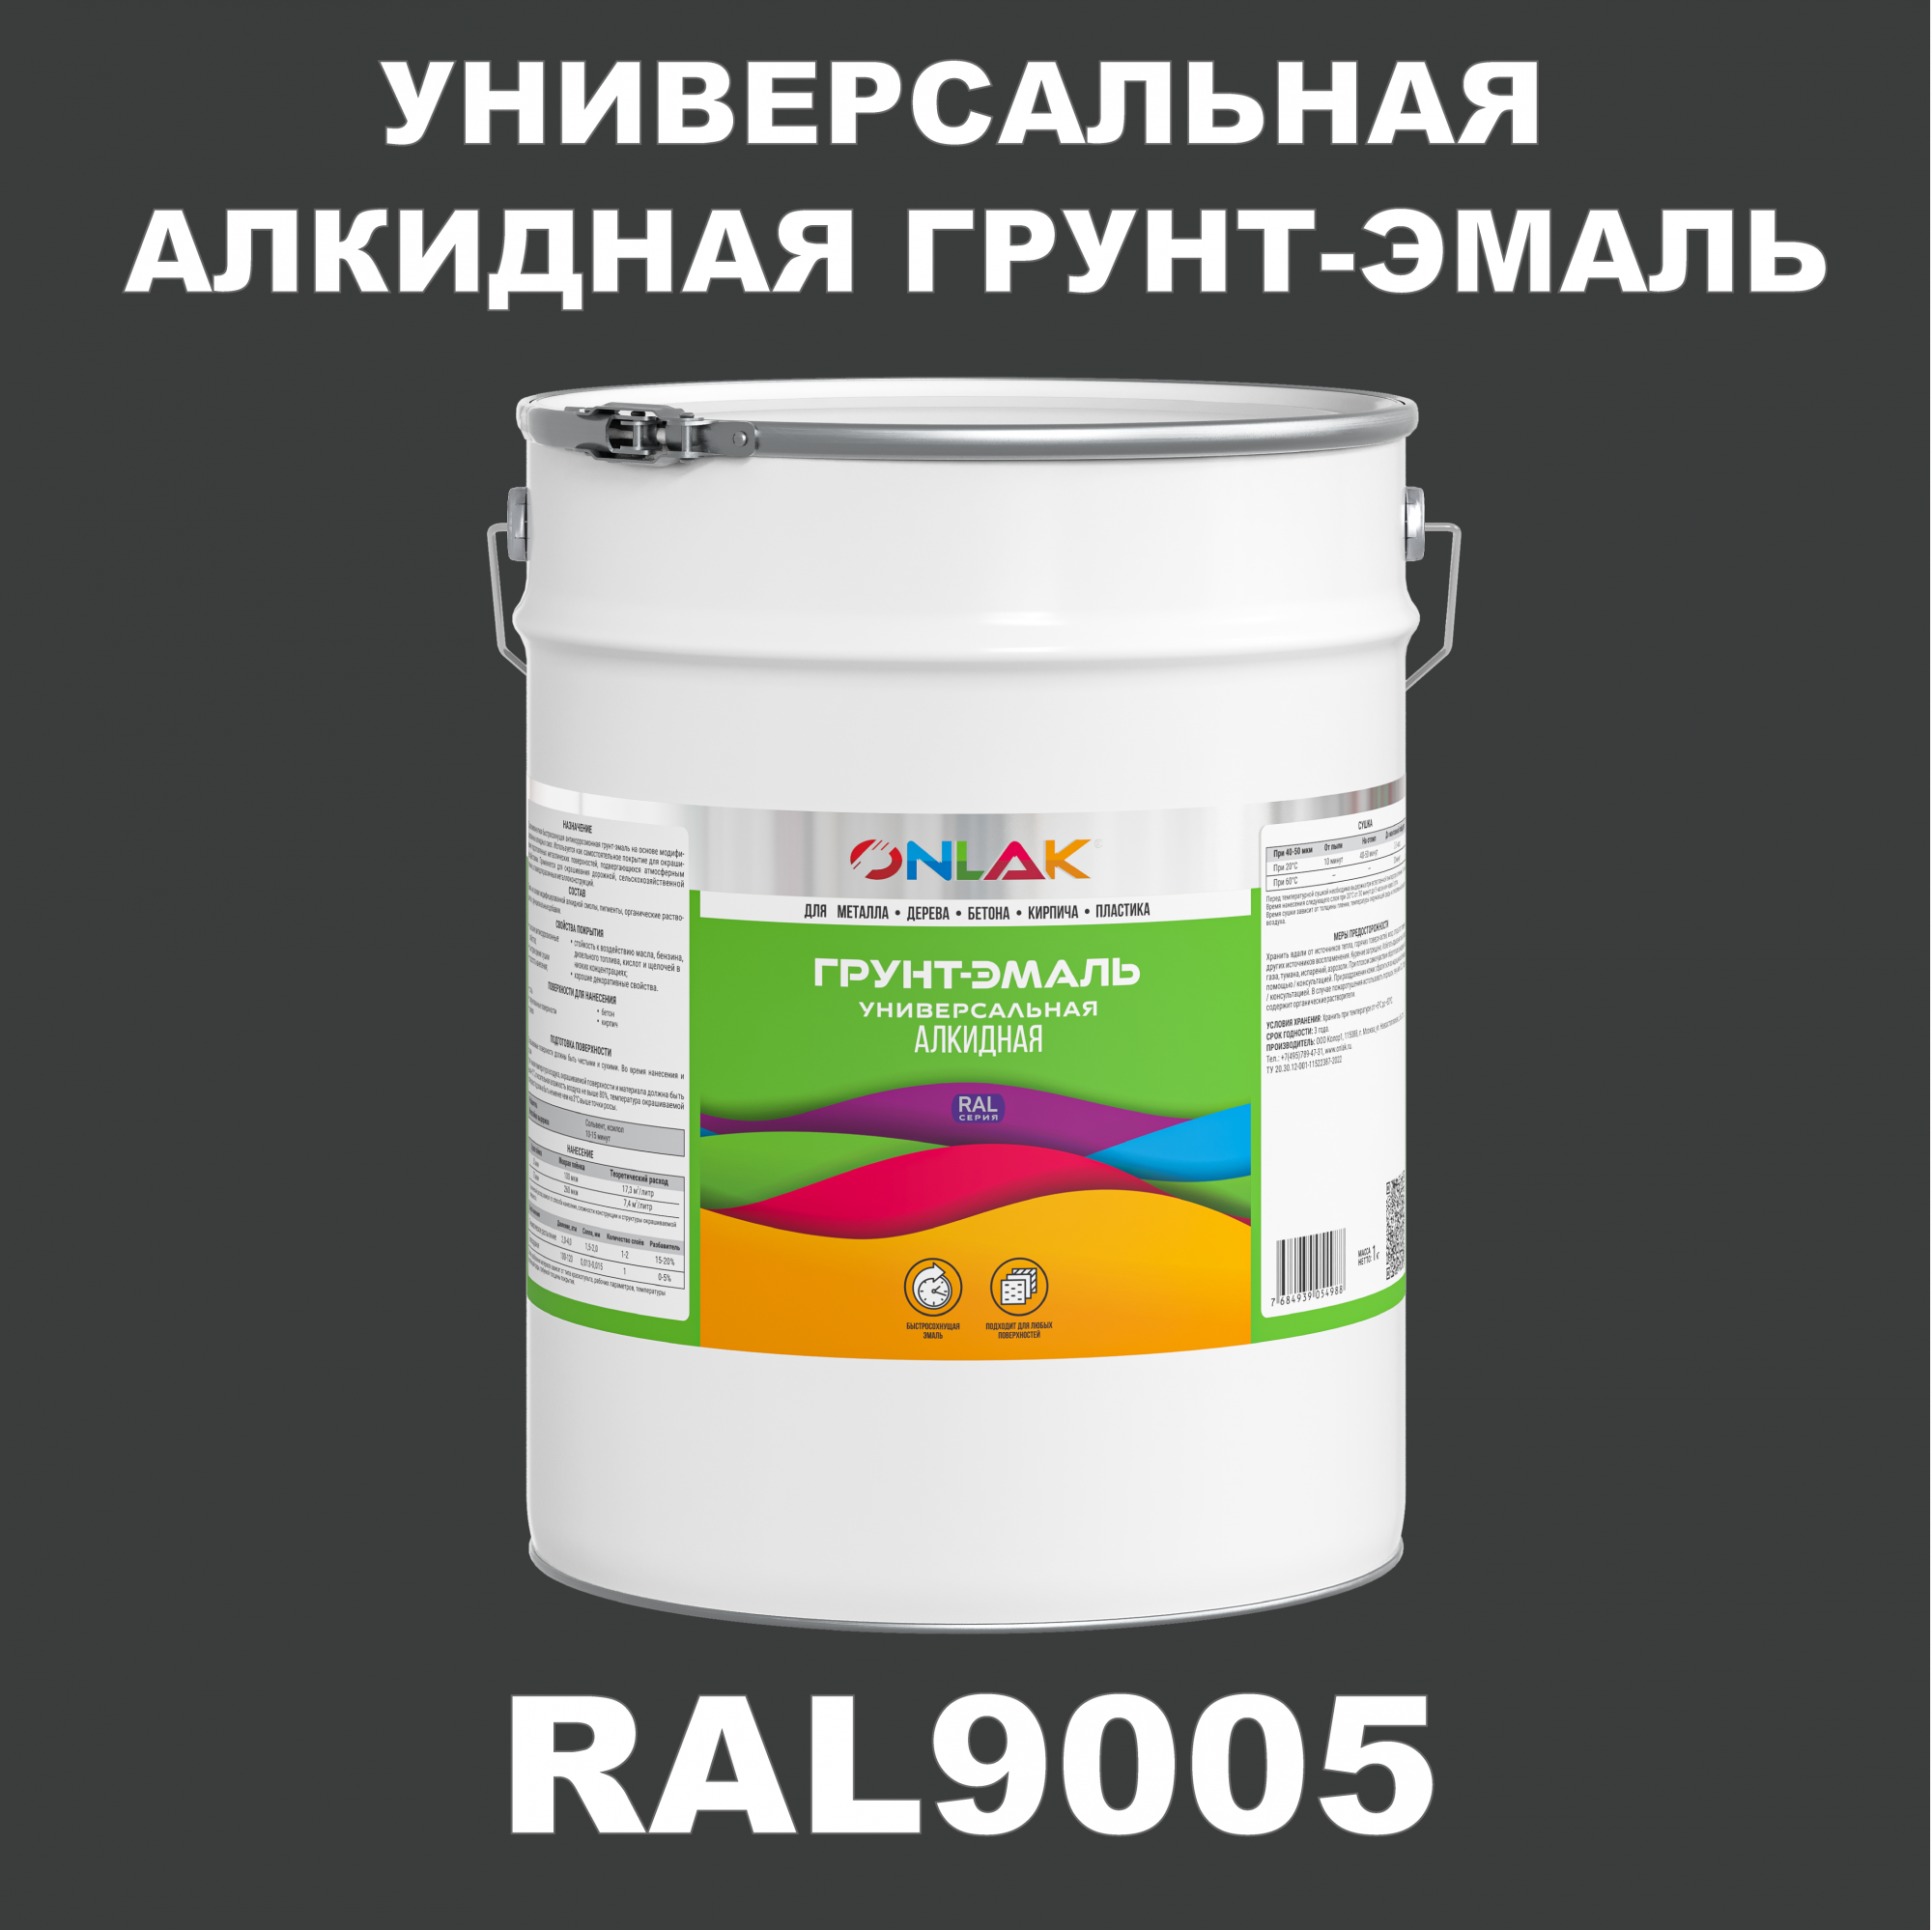 Грунт-эмаль ONLAK 1К RAL9005 антикоррозионная алкидная по металлу по ржавчине 20 кг грунт эмаль рас по ржавчине алкидная синяя 0 9 кг